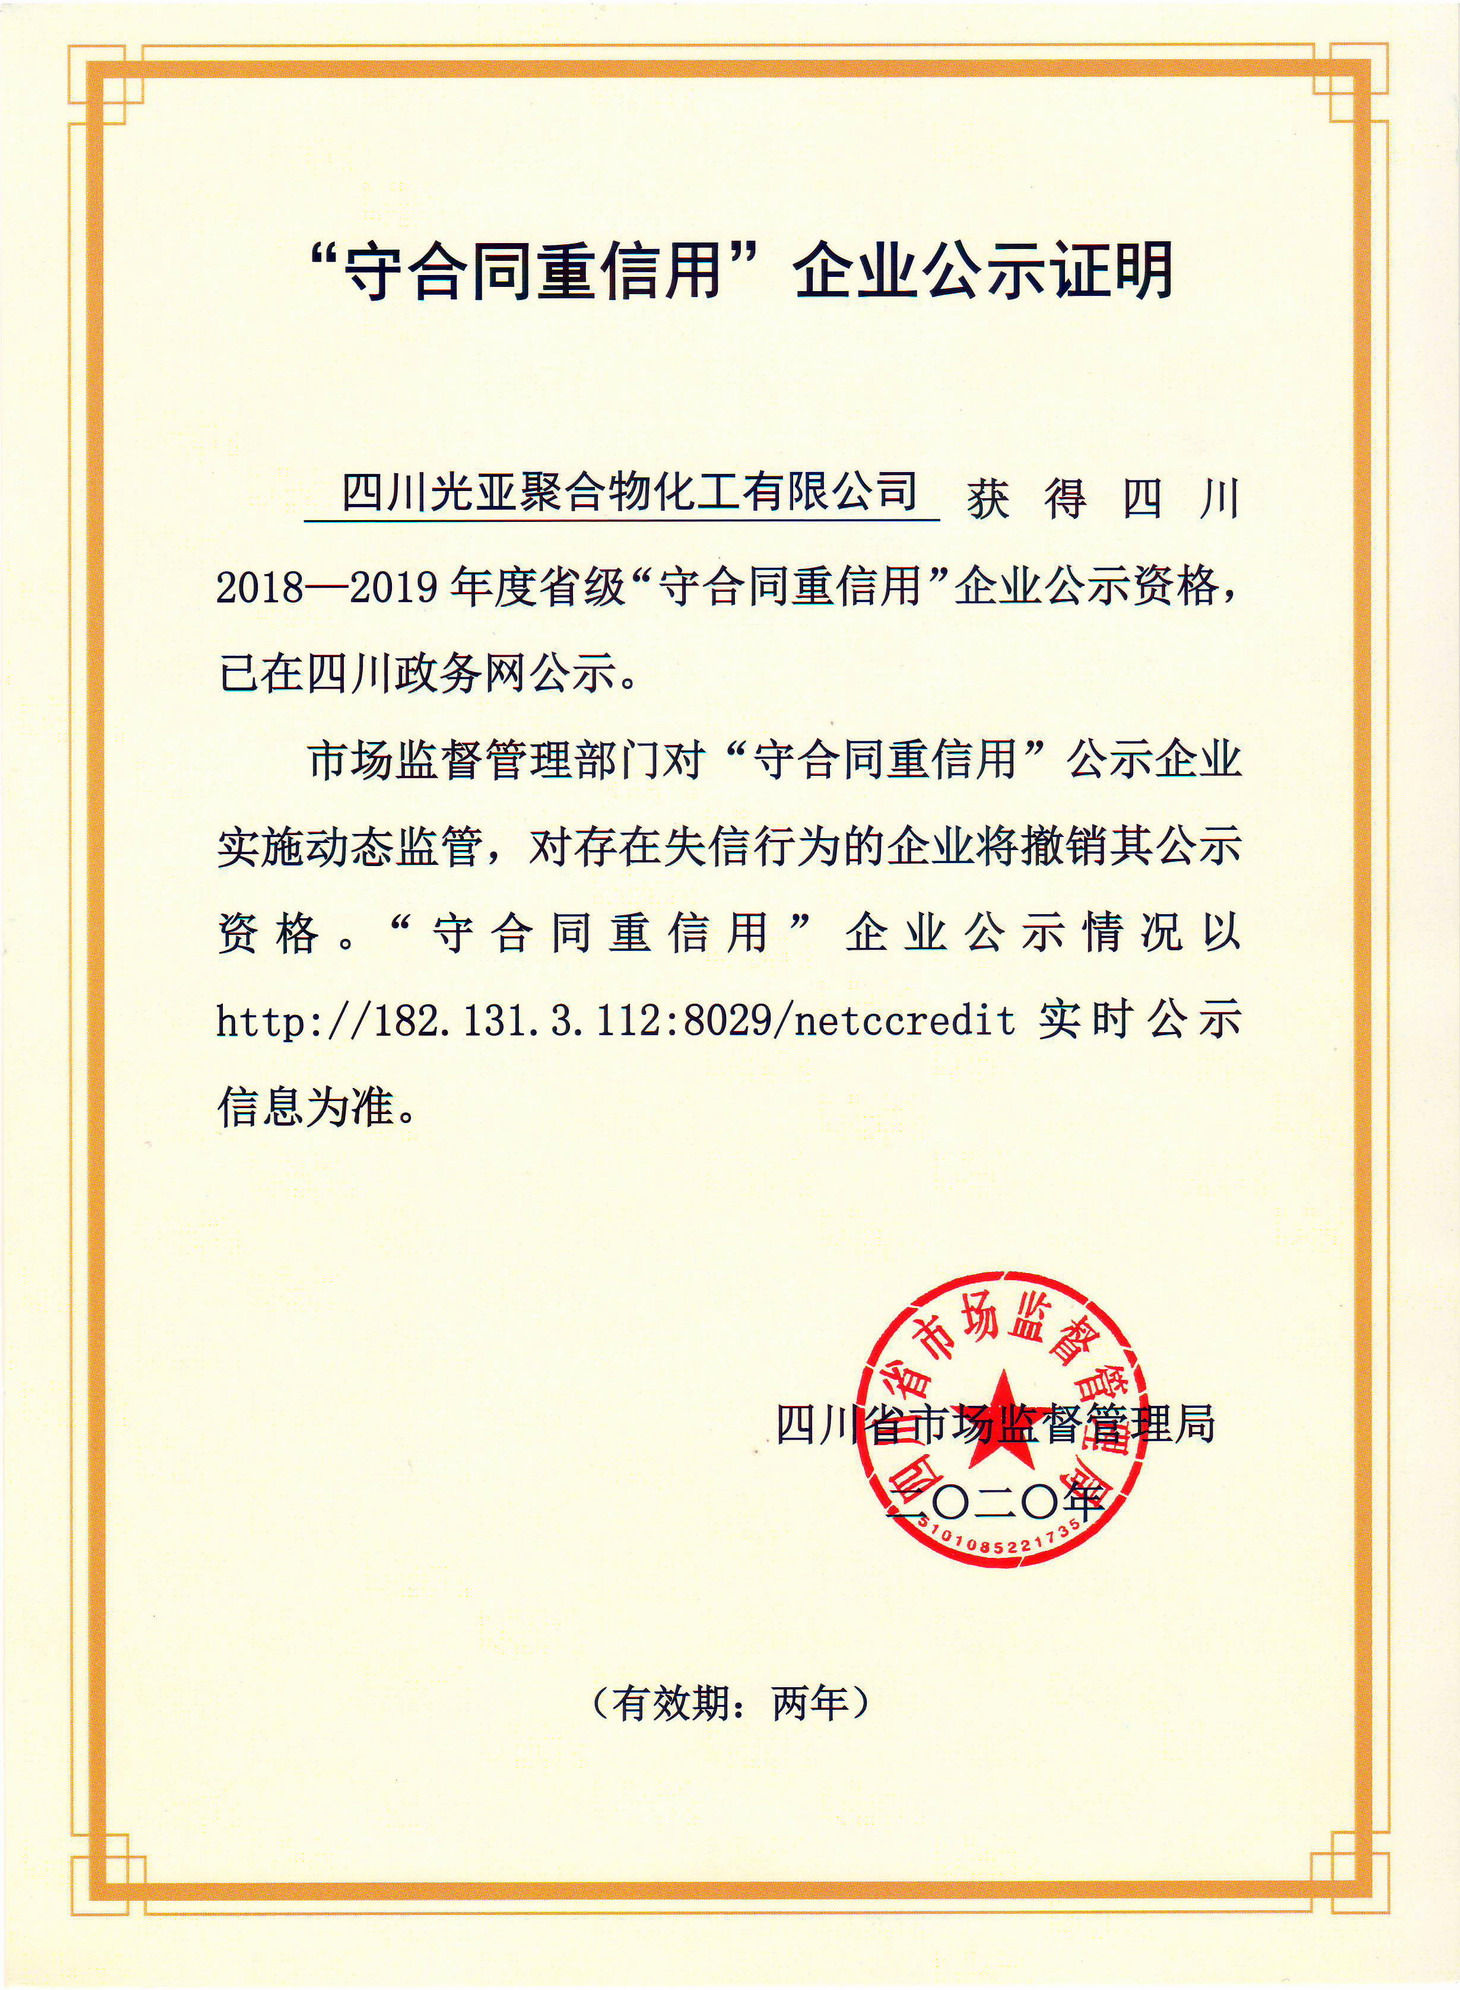 热烈祝贺四川光亚聚合物化工有限公司荣获2018-2019年度省级“守合同重信用”企业